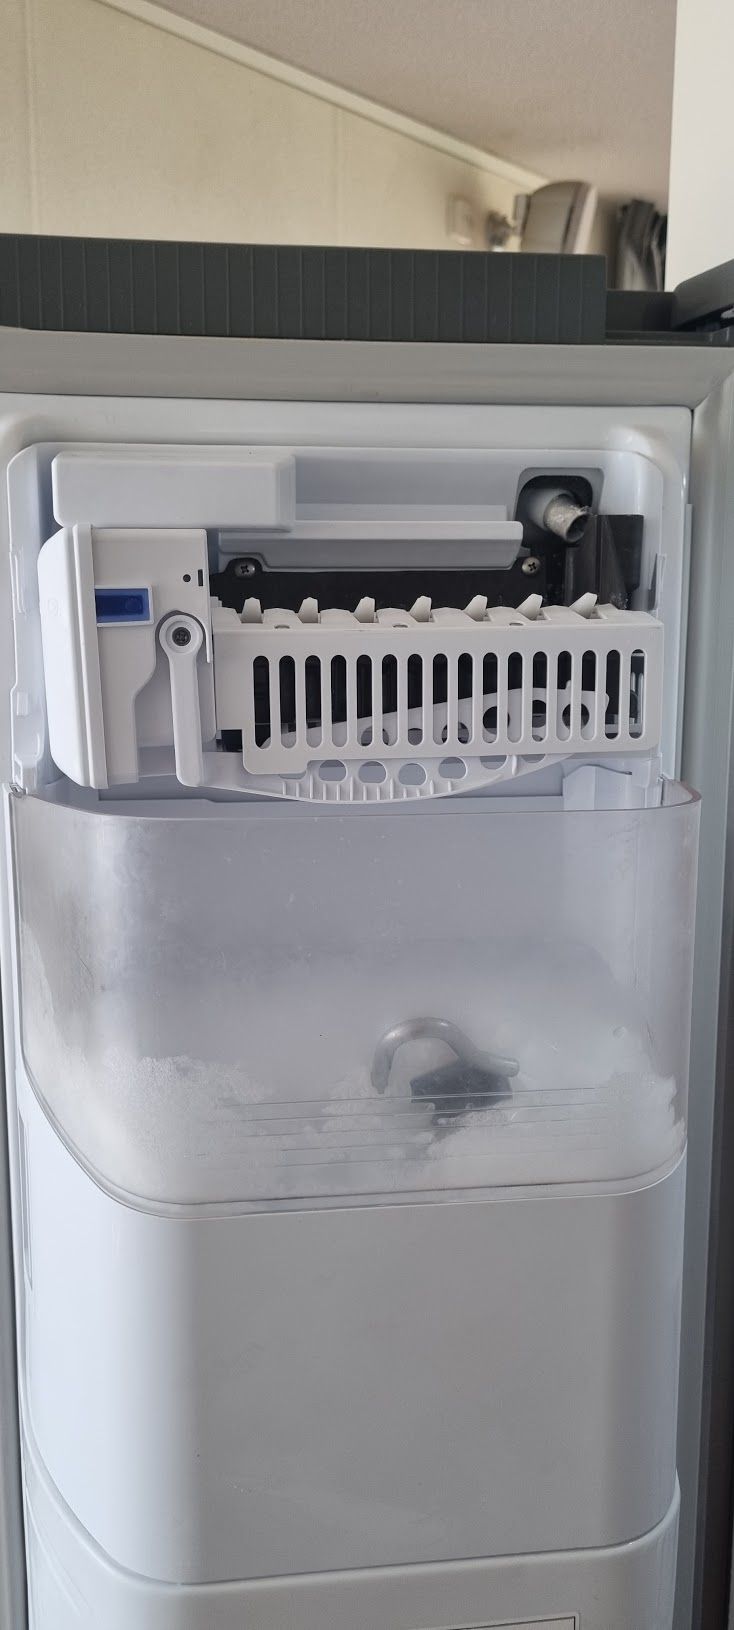 activering Commotie Supplement Ijsblokjes maker in rs6181gdsr koelkast werkt sporadisch - Samsung Community